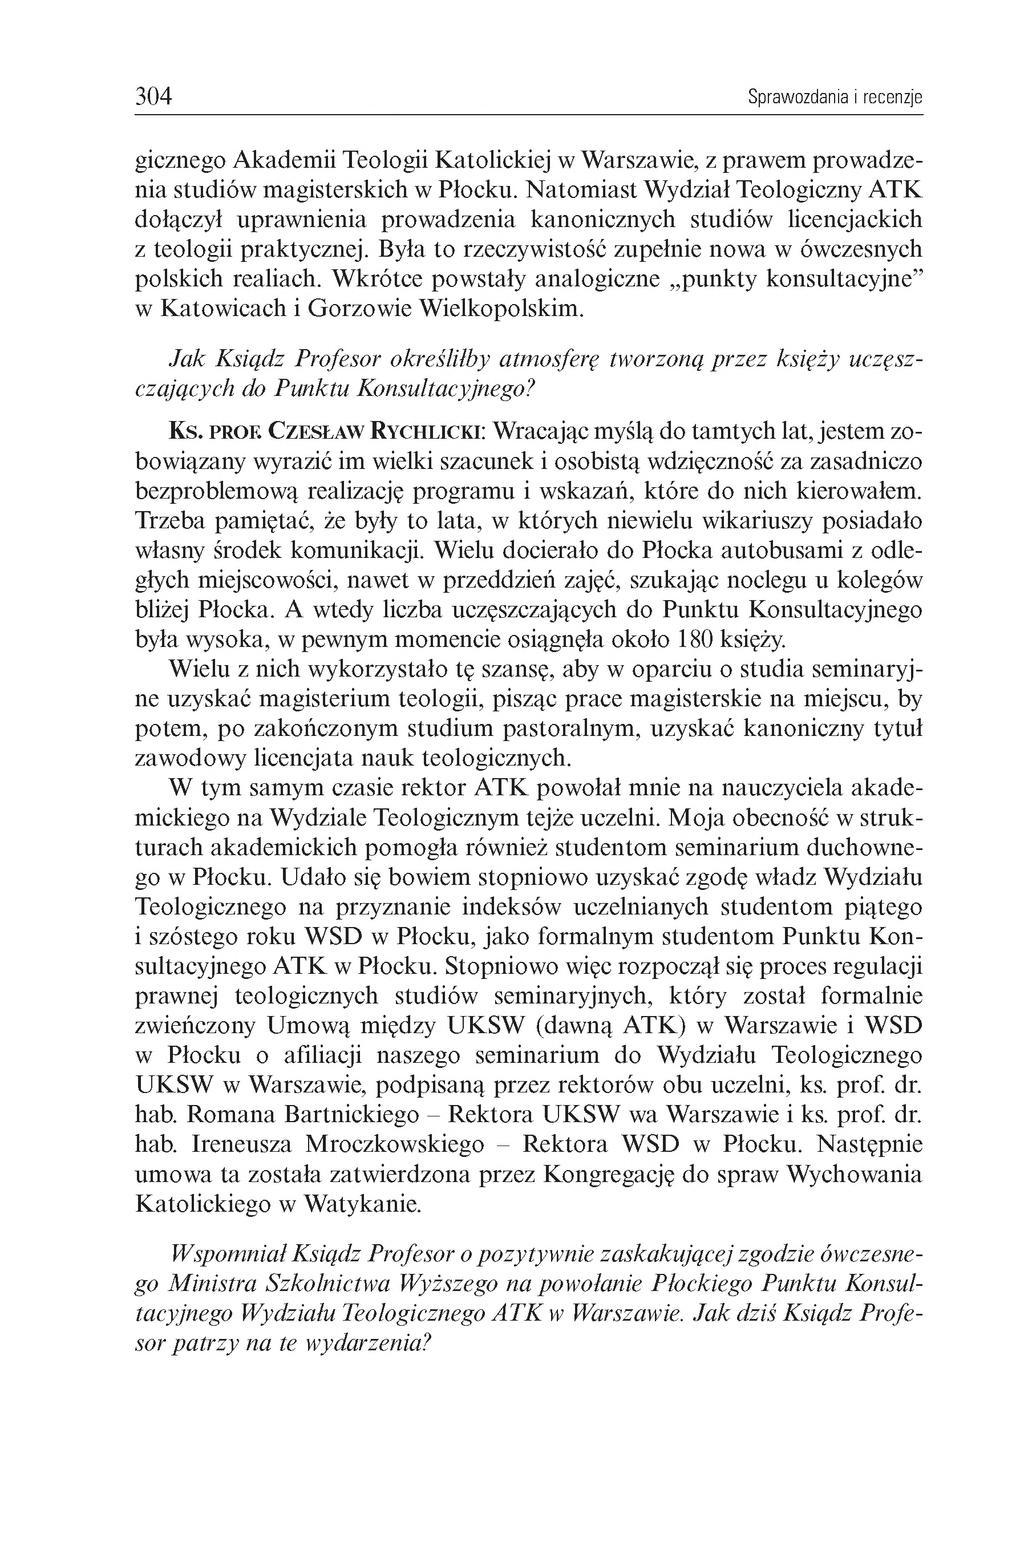 304 Sprawozdania i recenzje gicznego Akademii Teologii Katolickiej w Warszawie, z prawem prowadzenia studiów magisterskich w Płocku.